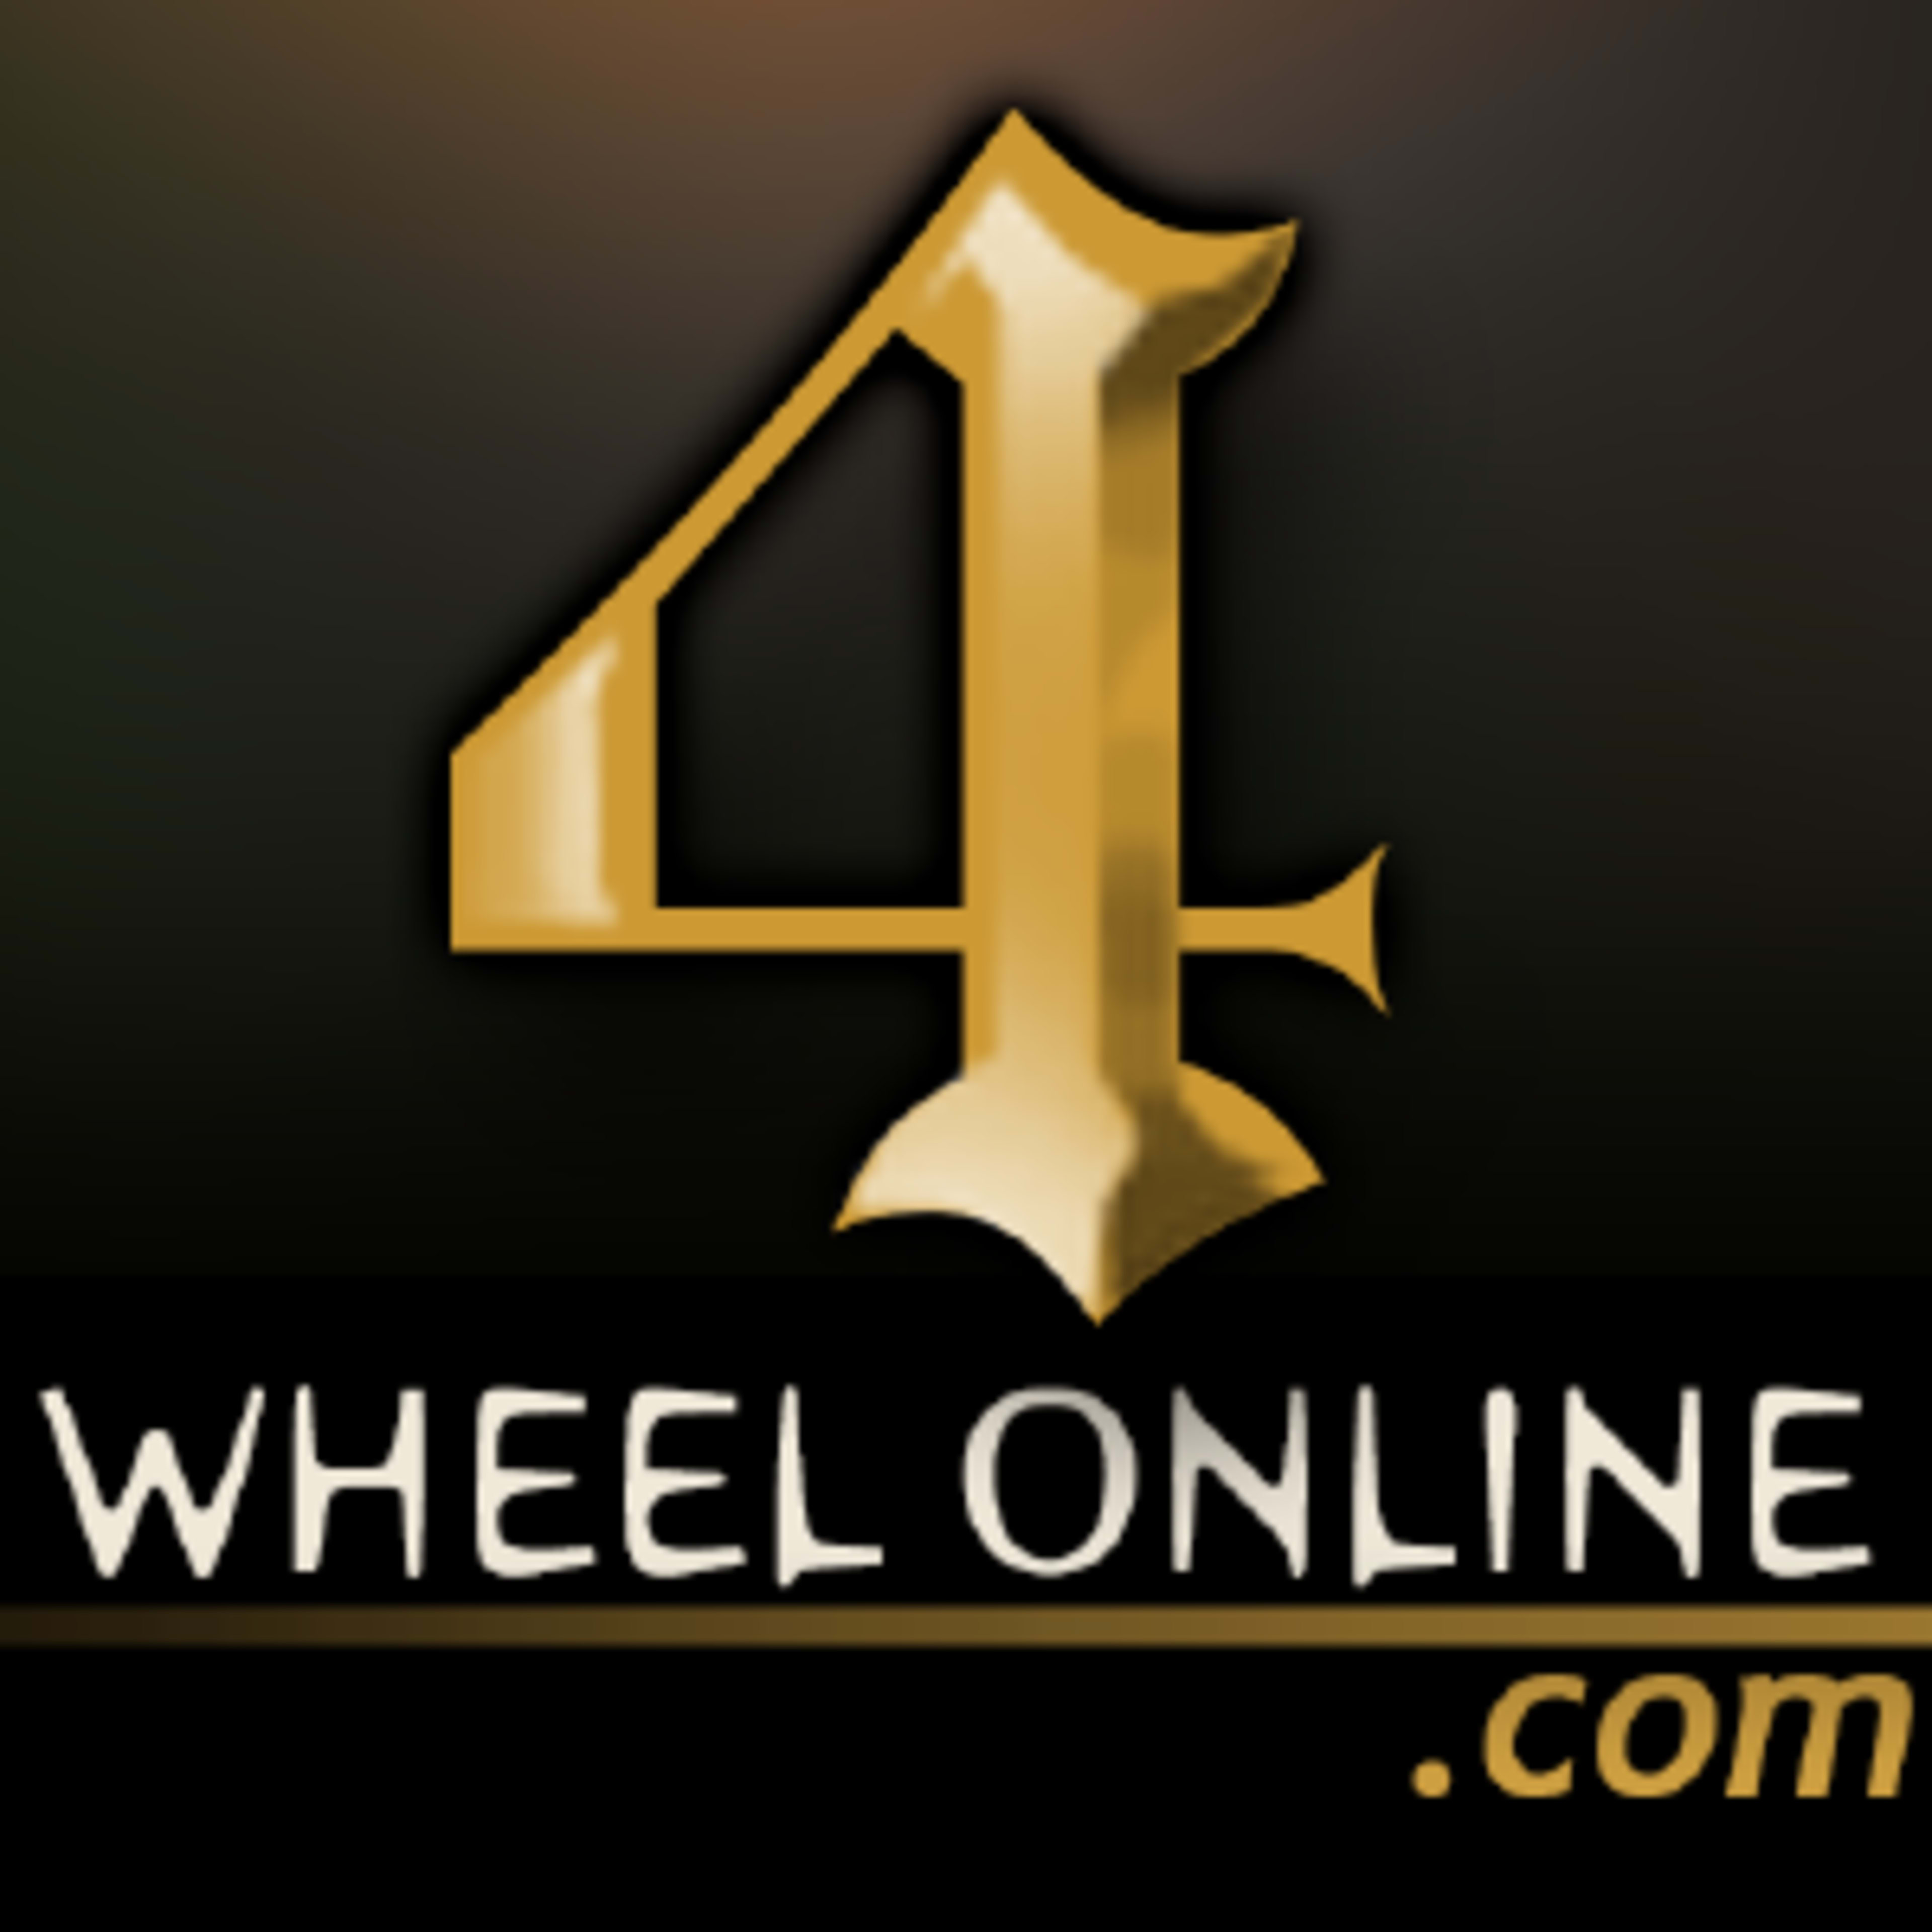 4 Wheel Online Code